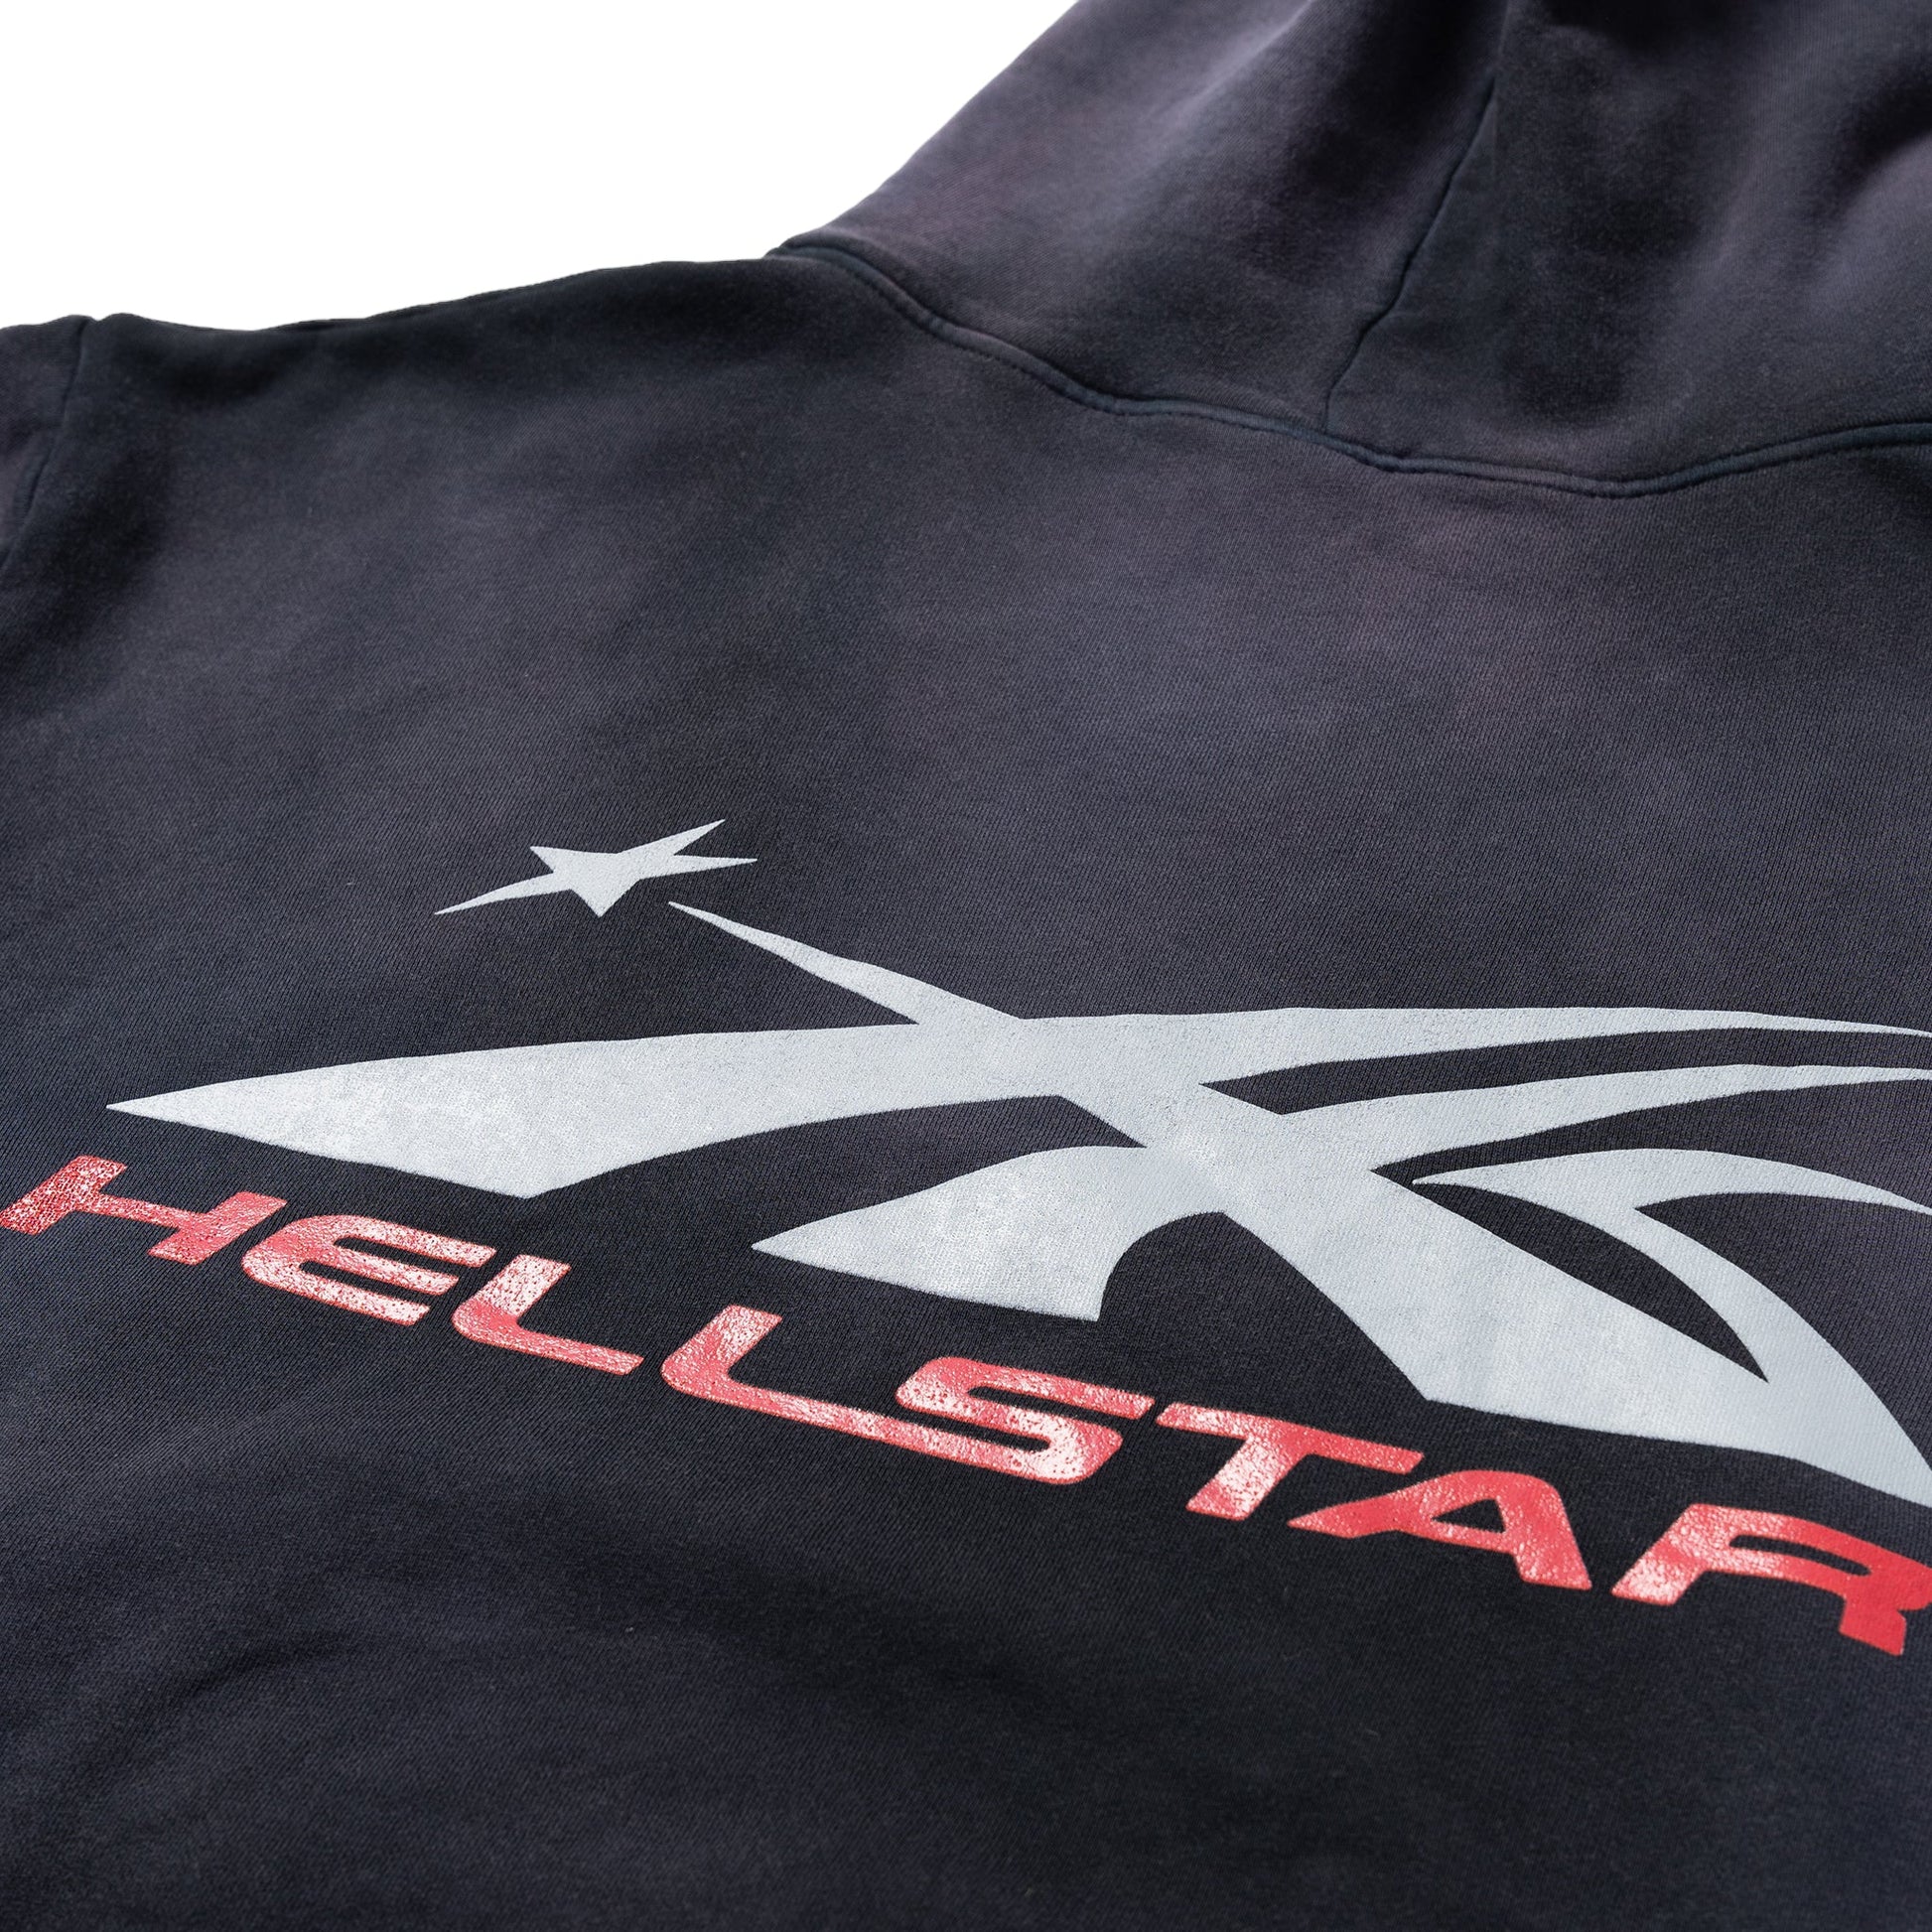 Hellstar Airbrushed Skull Hoodie - Supra Sneakers